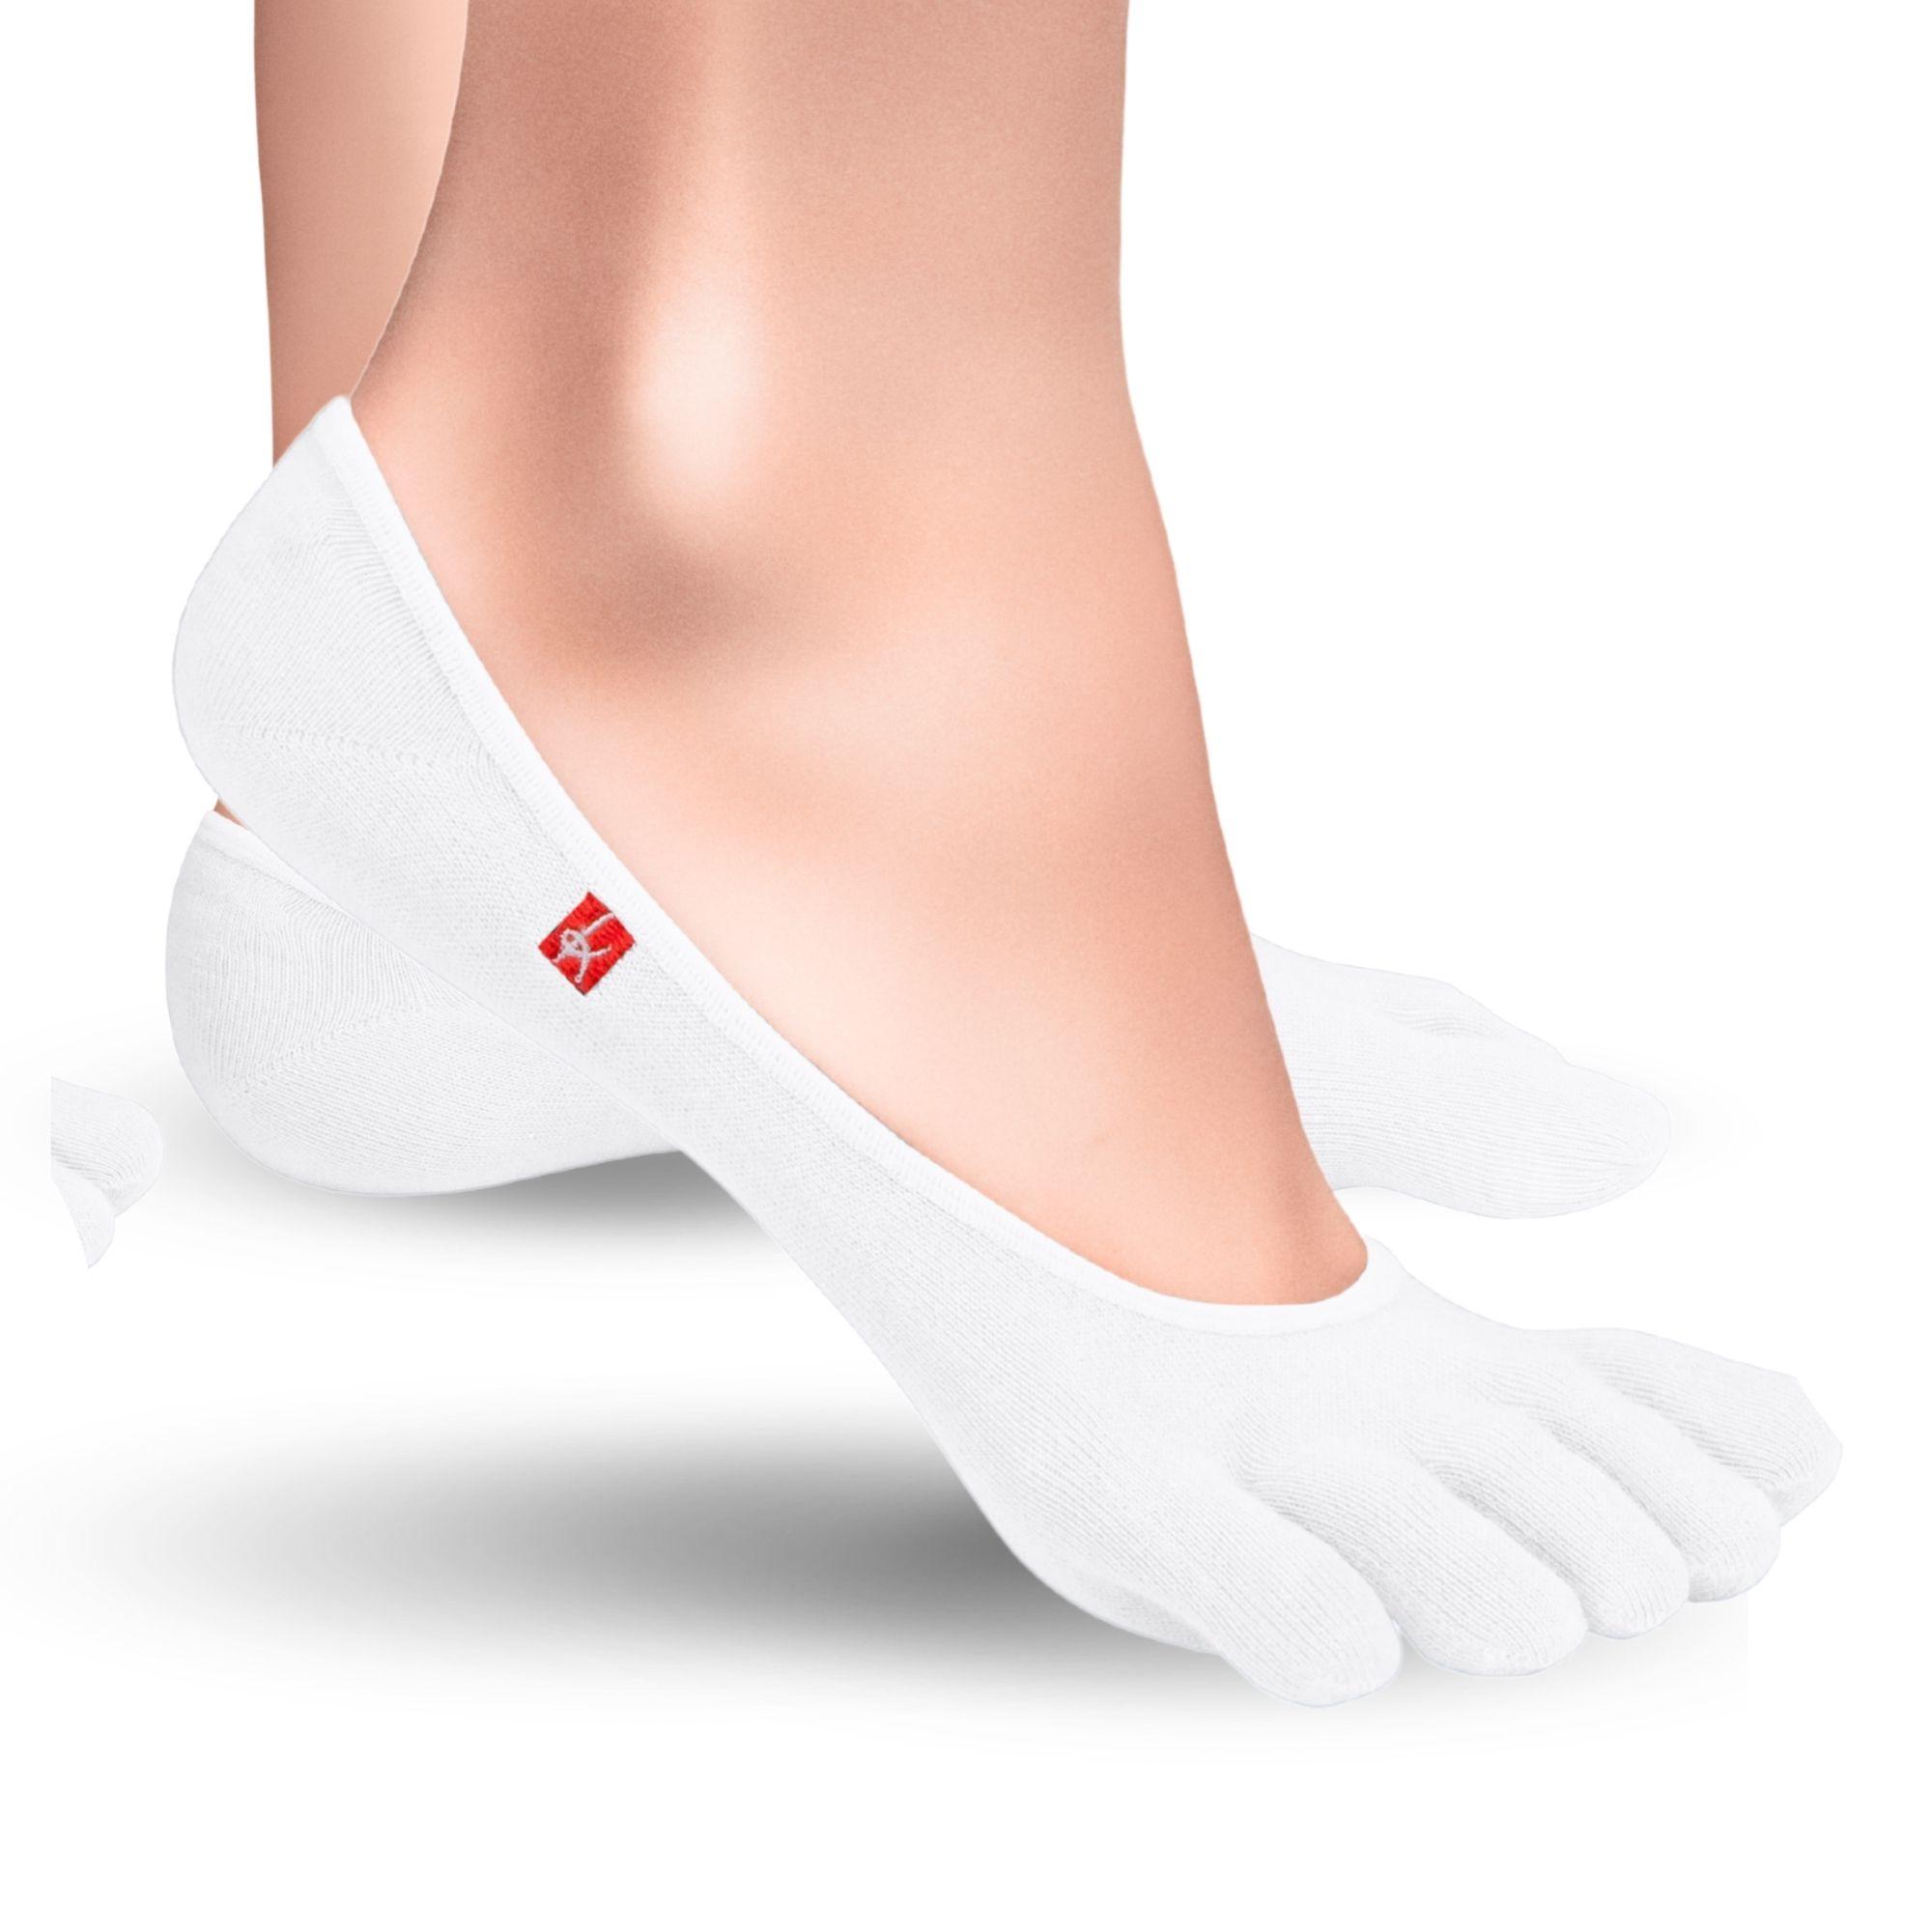 Knitido Zero Coolmax chaussons orteils femme chaussettes à orteils en blanc